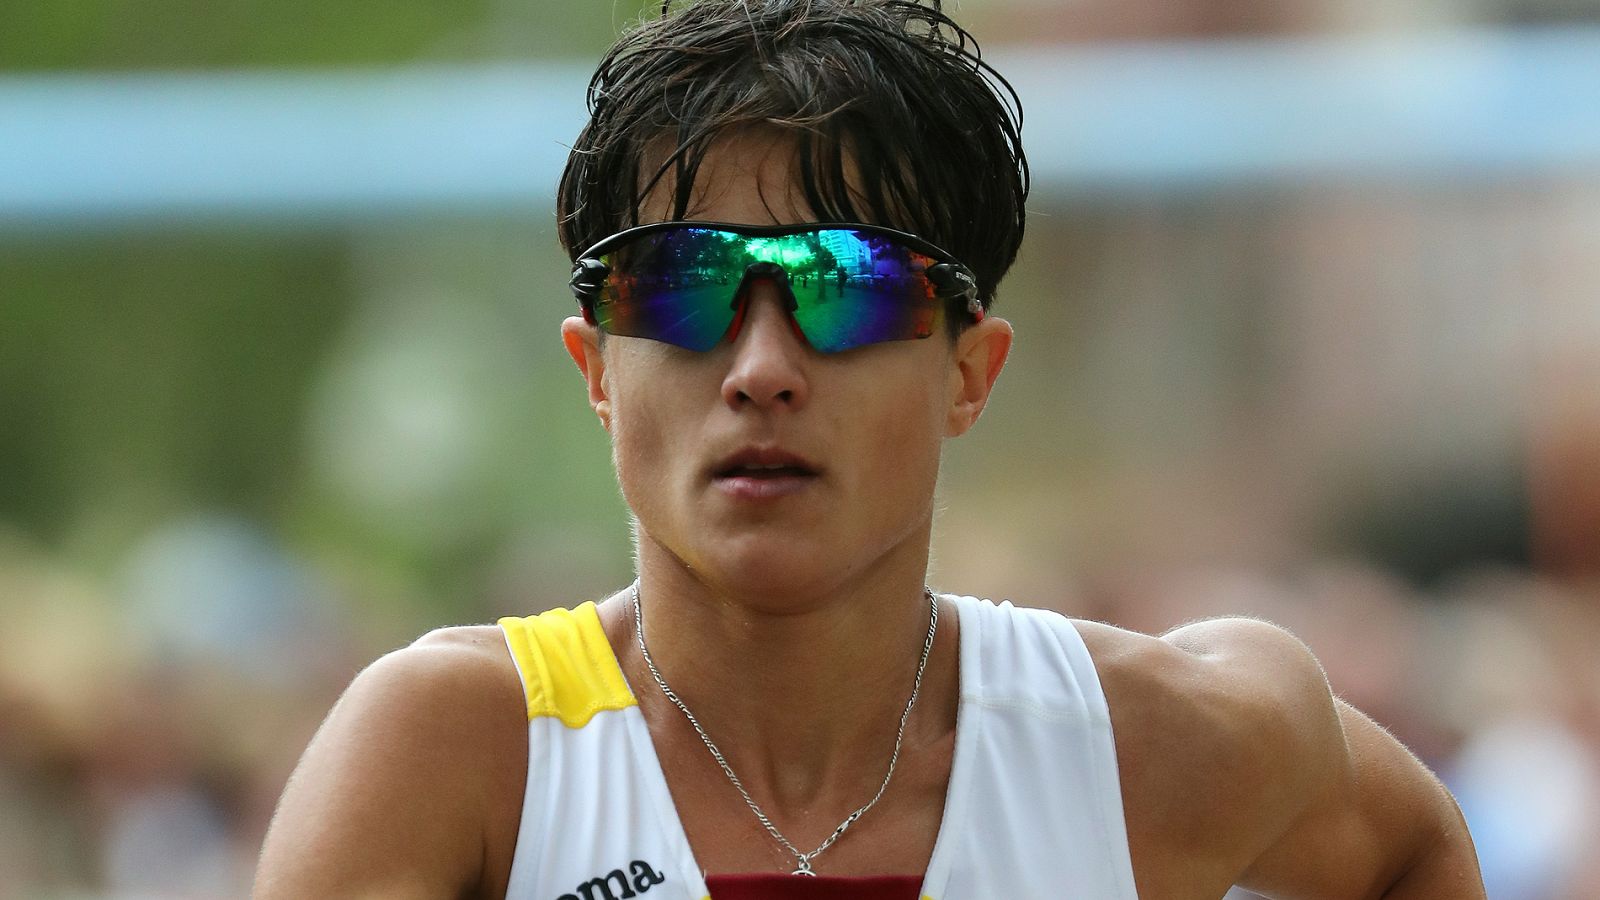 Atletismo: María Pérez sueña con Tokio 2020 - rtve.es